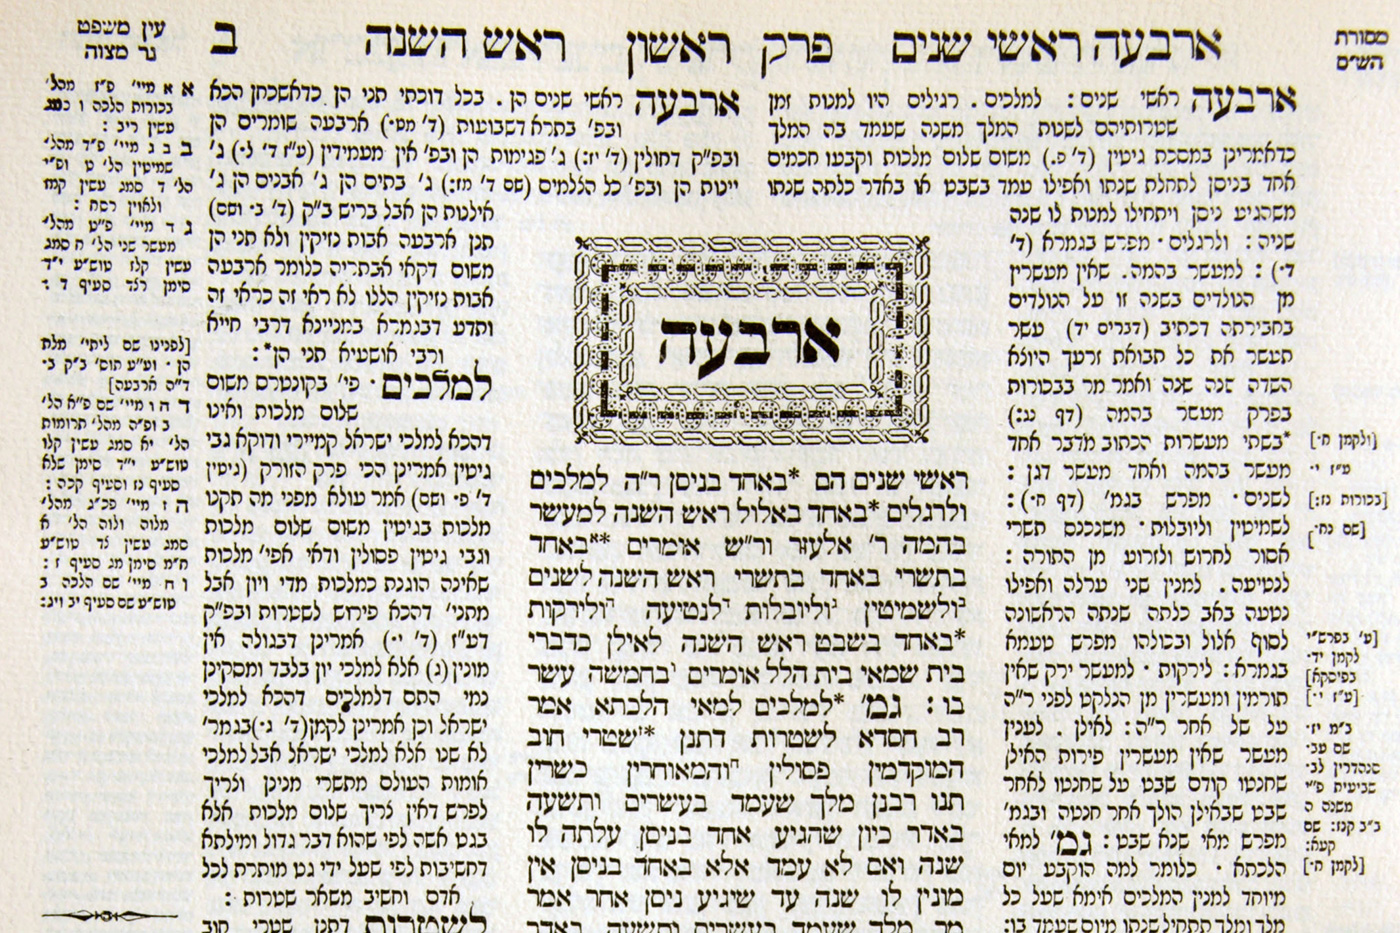 Themenbild zum Thema Judentum